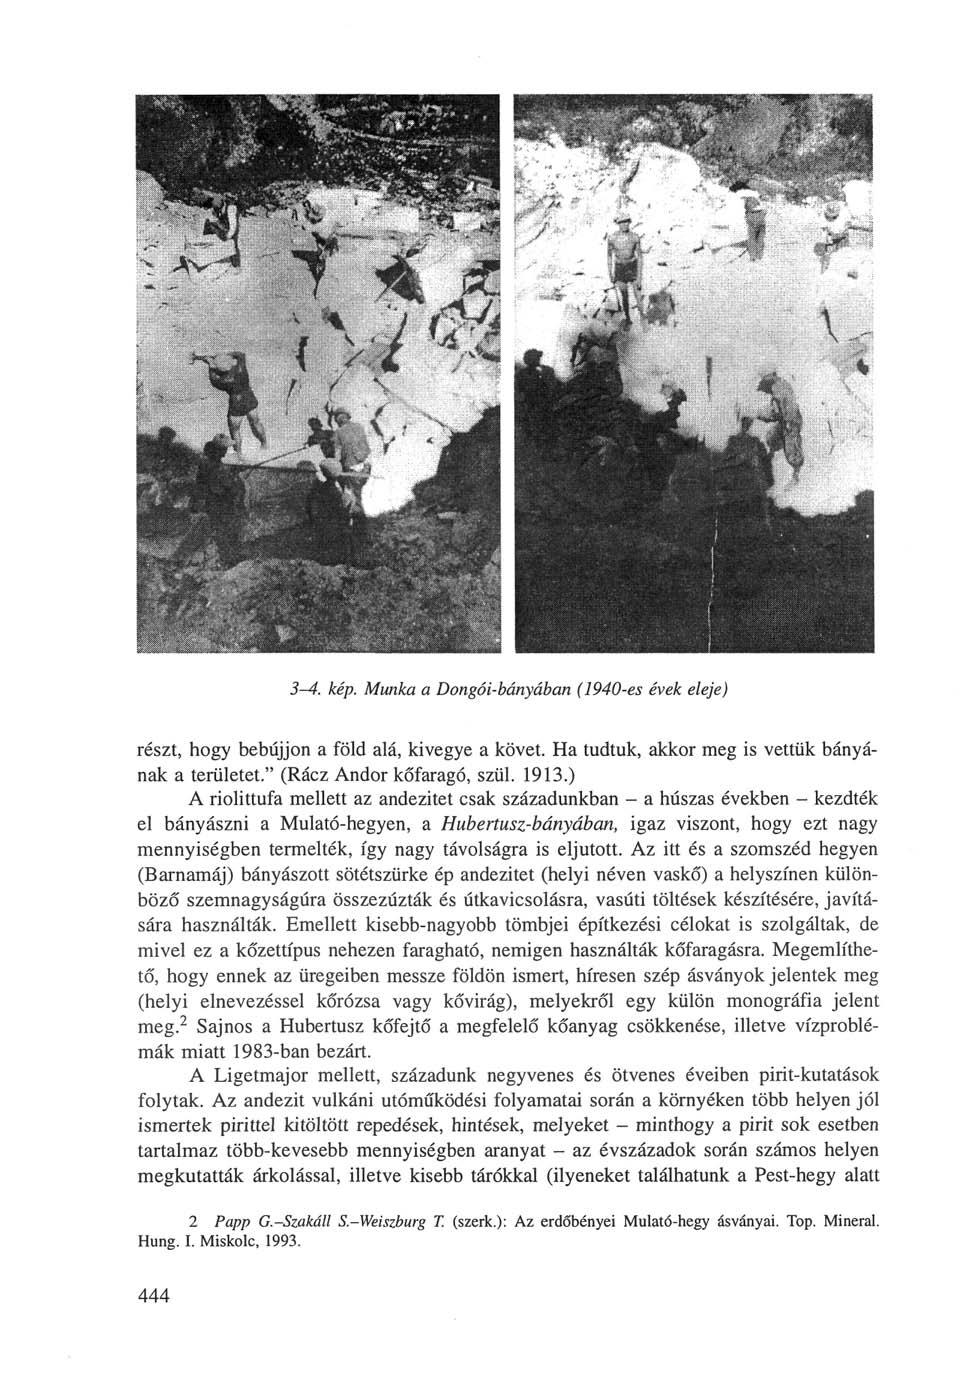 3-4. kép. Munka a Dongói-bányában (1940-es évek eleje) részt, hogy bebújjon a föld alá, kivegye a követ. Ha tudtuk, akkor meg is vettük bányának a területet." (Rácz Andor kőfaragó, szül. 1913.